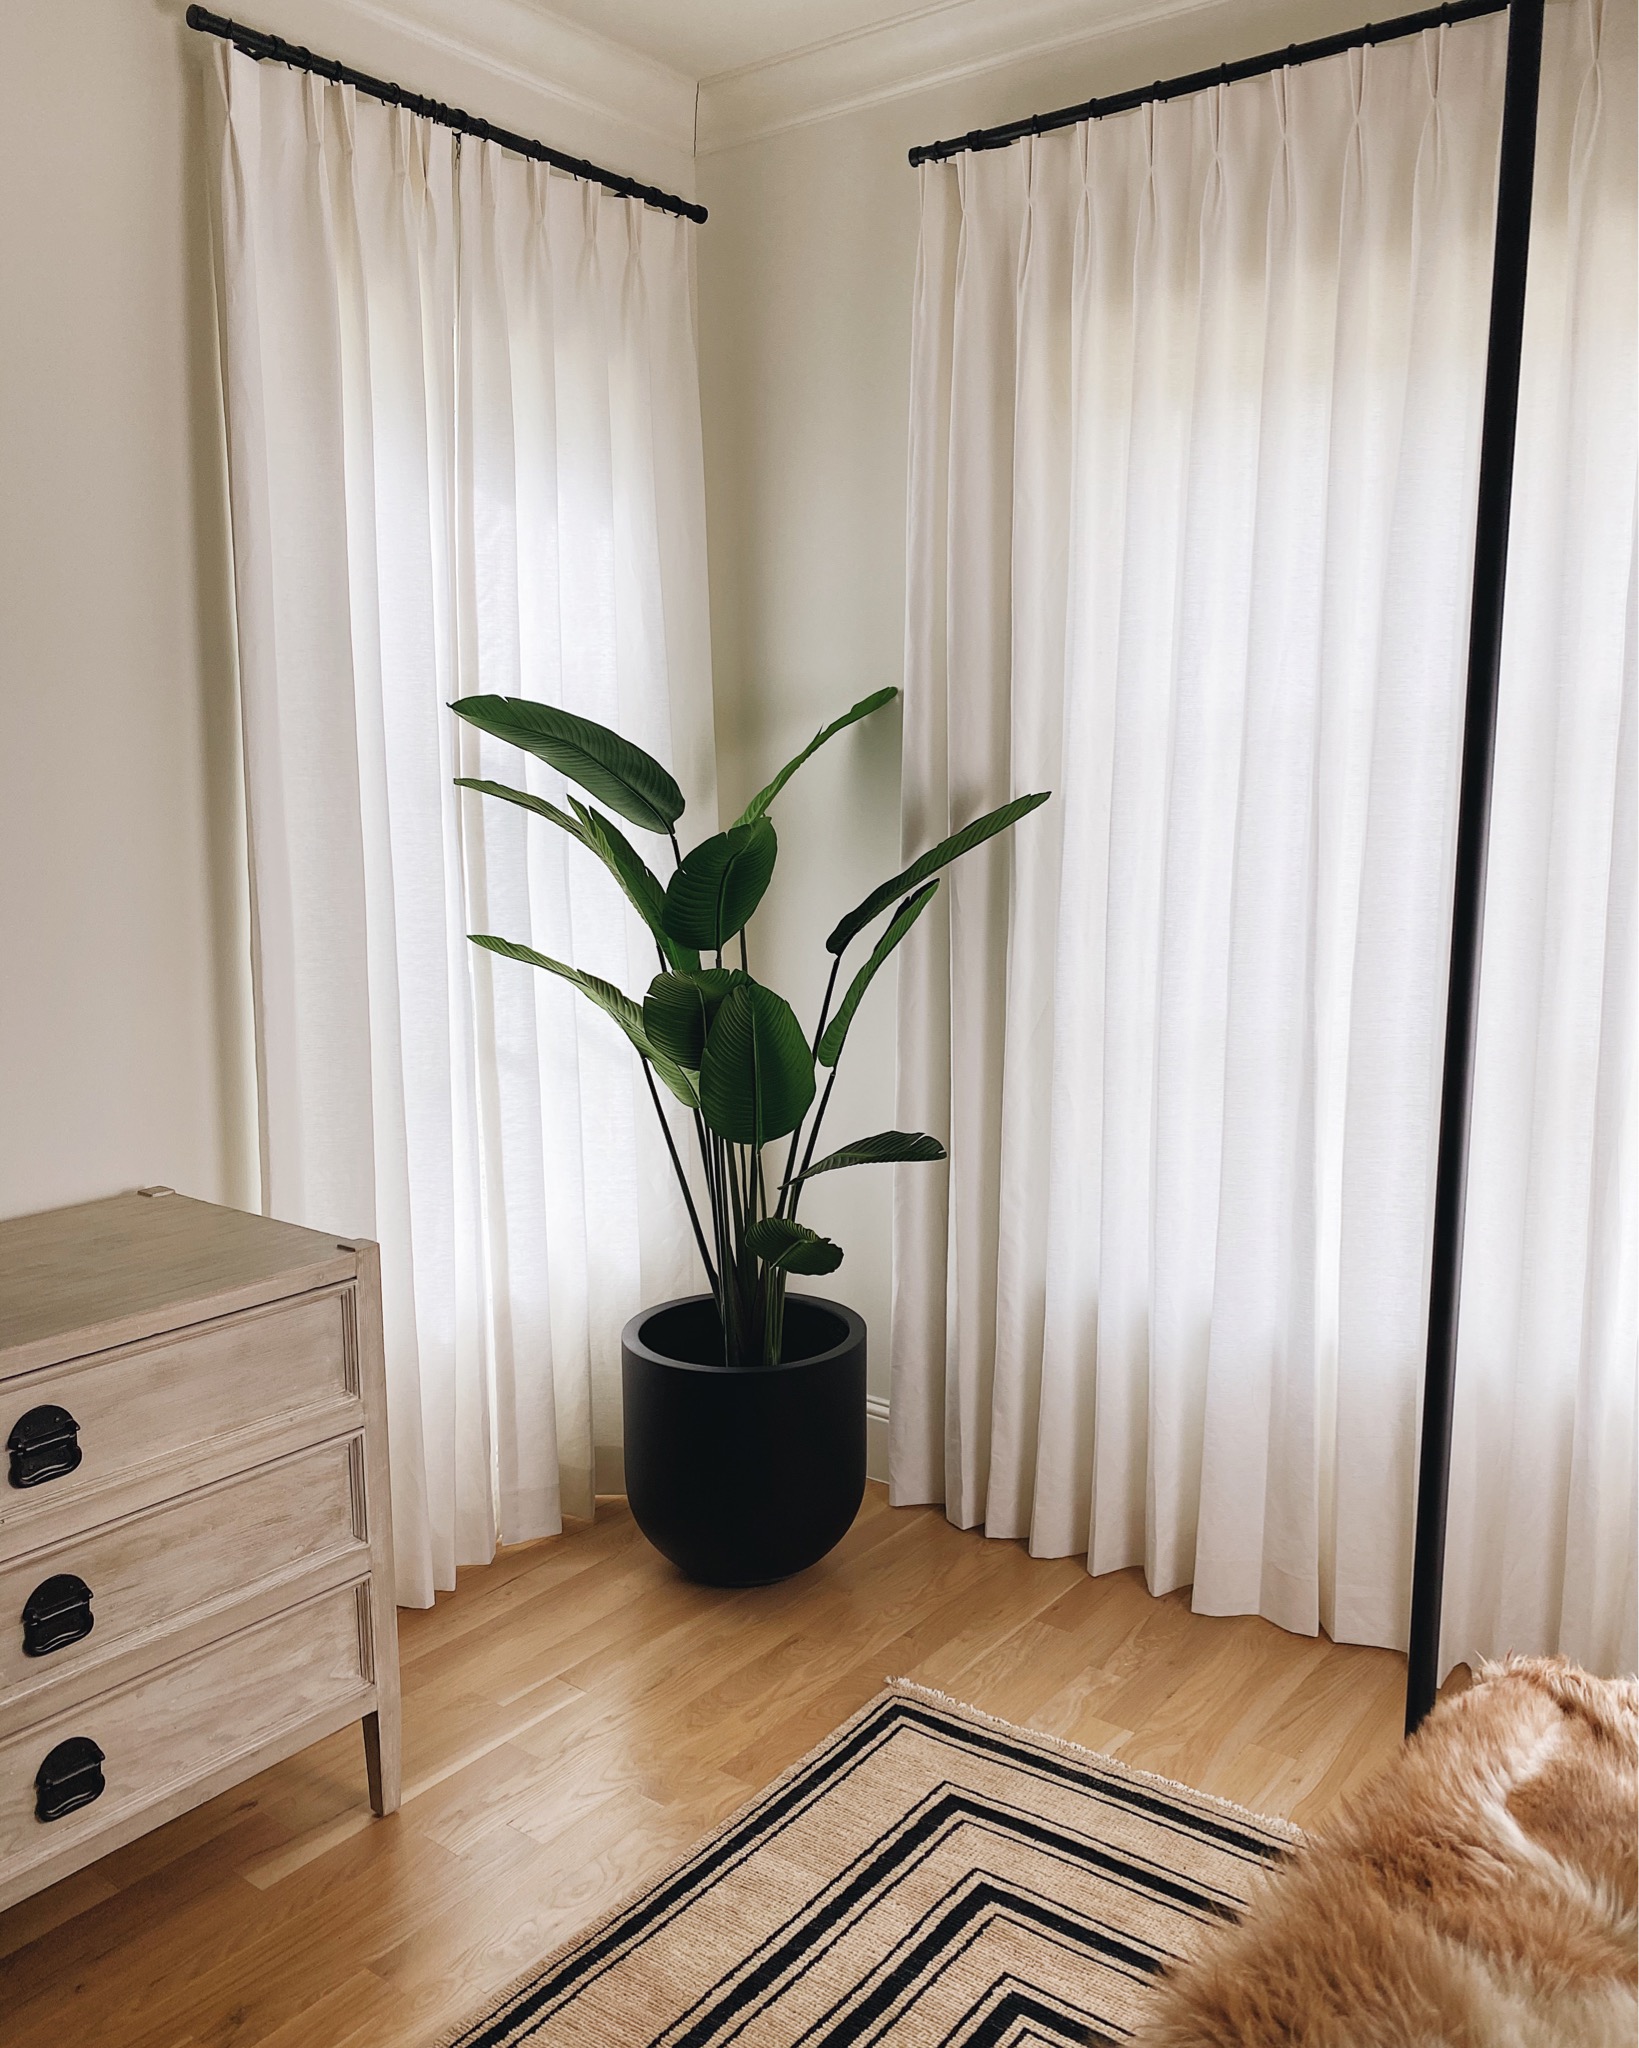 BEDROOM FAUX PLANT + PLANTER